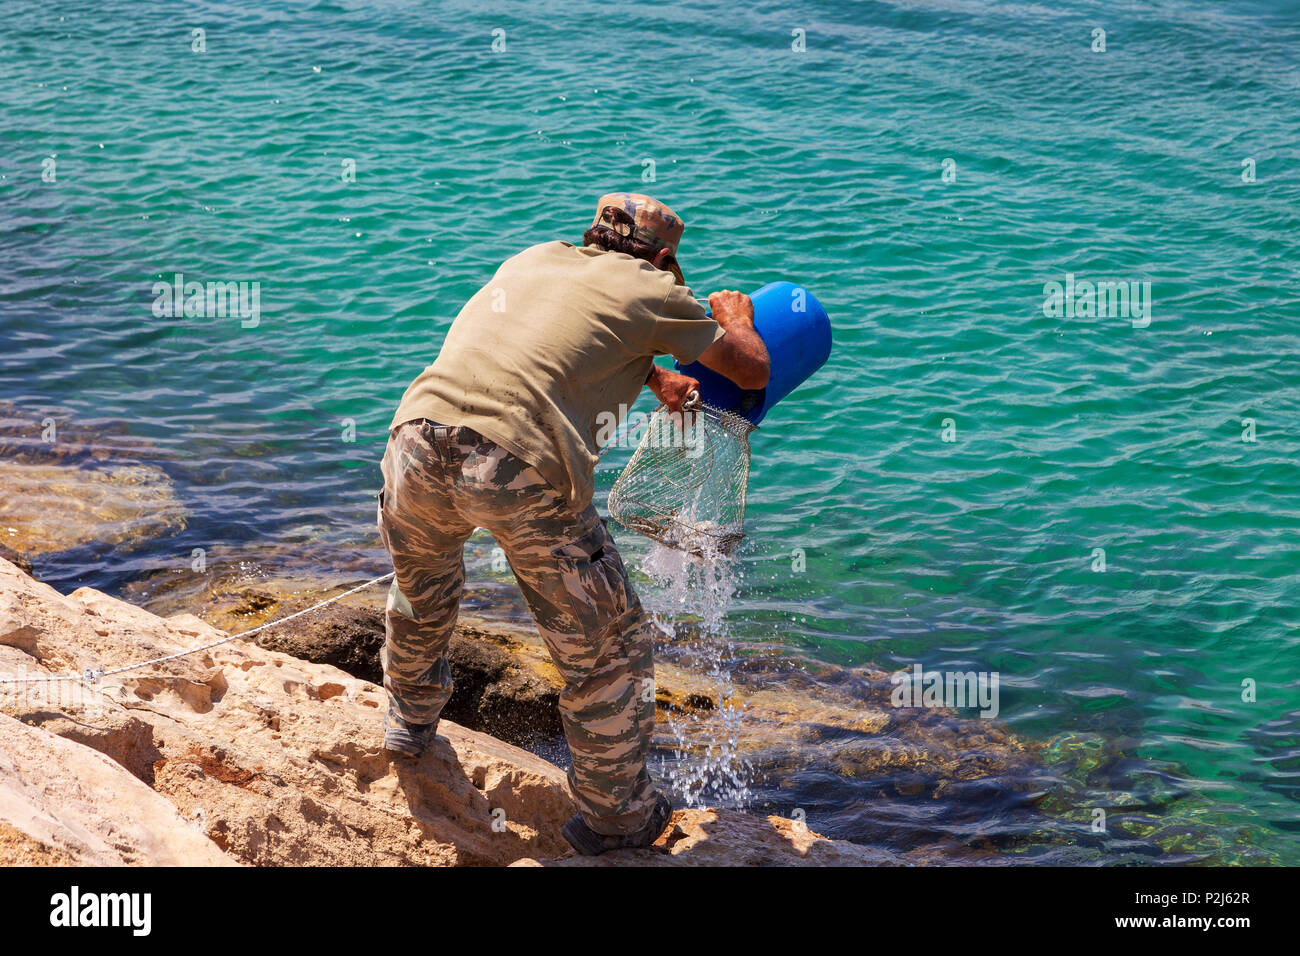 Les pêcheurs de verser l'eau et les poissons qu'il a pris dans un panier métallique pour garder la fraîcheur, Agia Napa, Chypre Banque D'Images